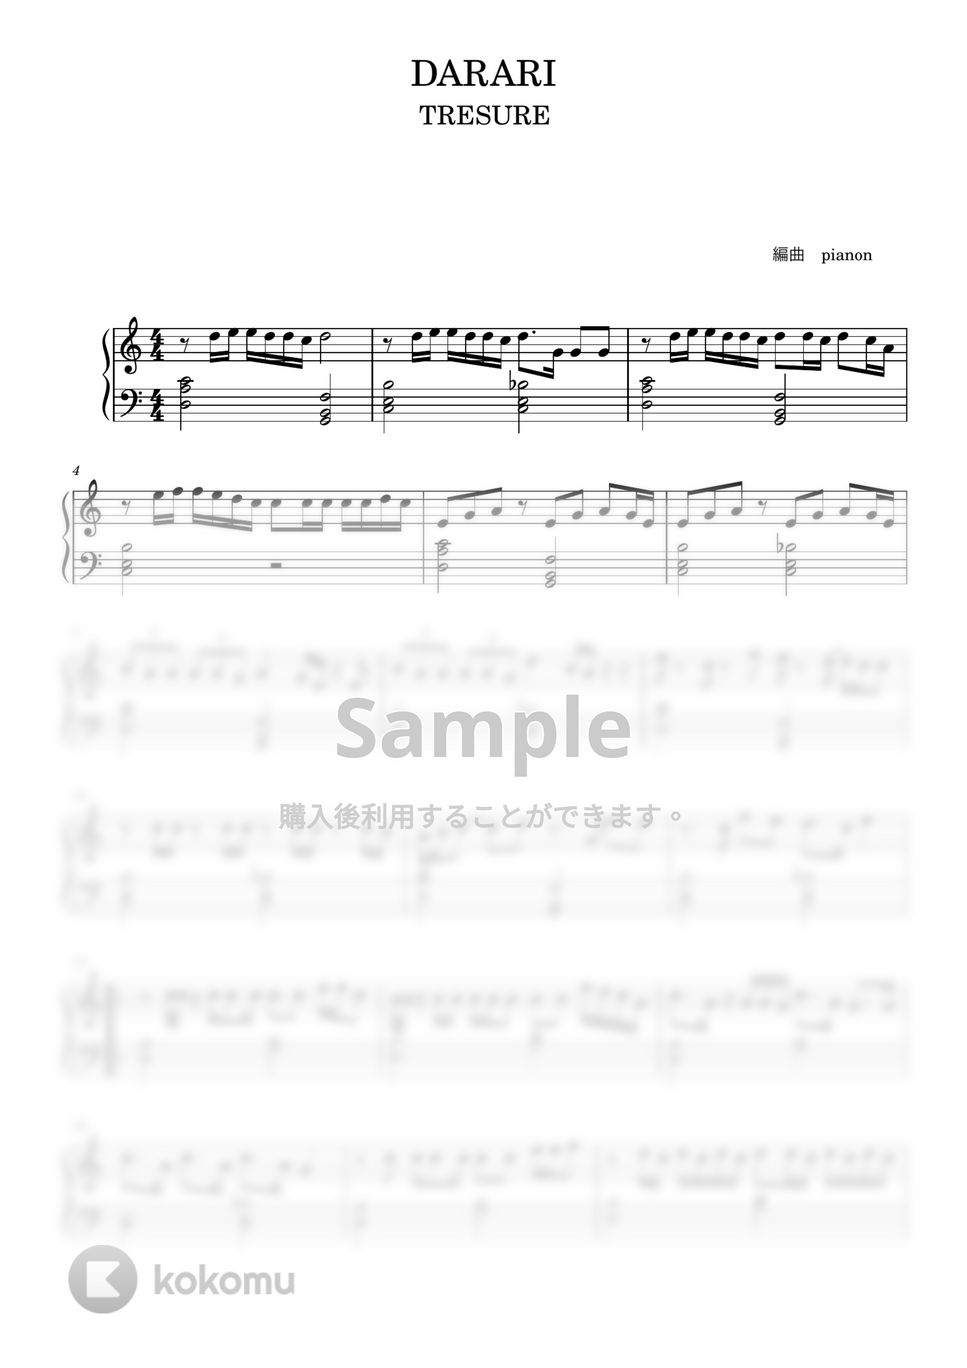 TREASURE - DARARI (ピアノ中級ソロ) by pianon